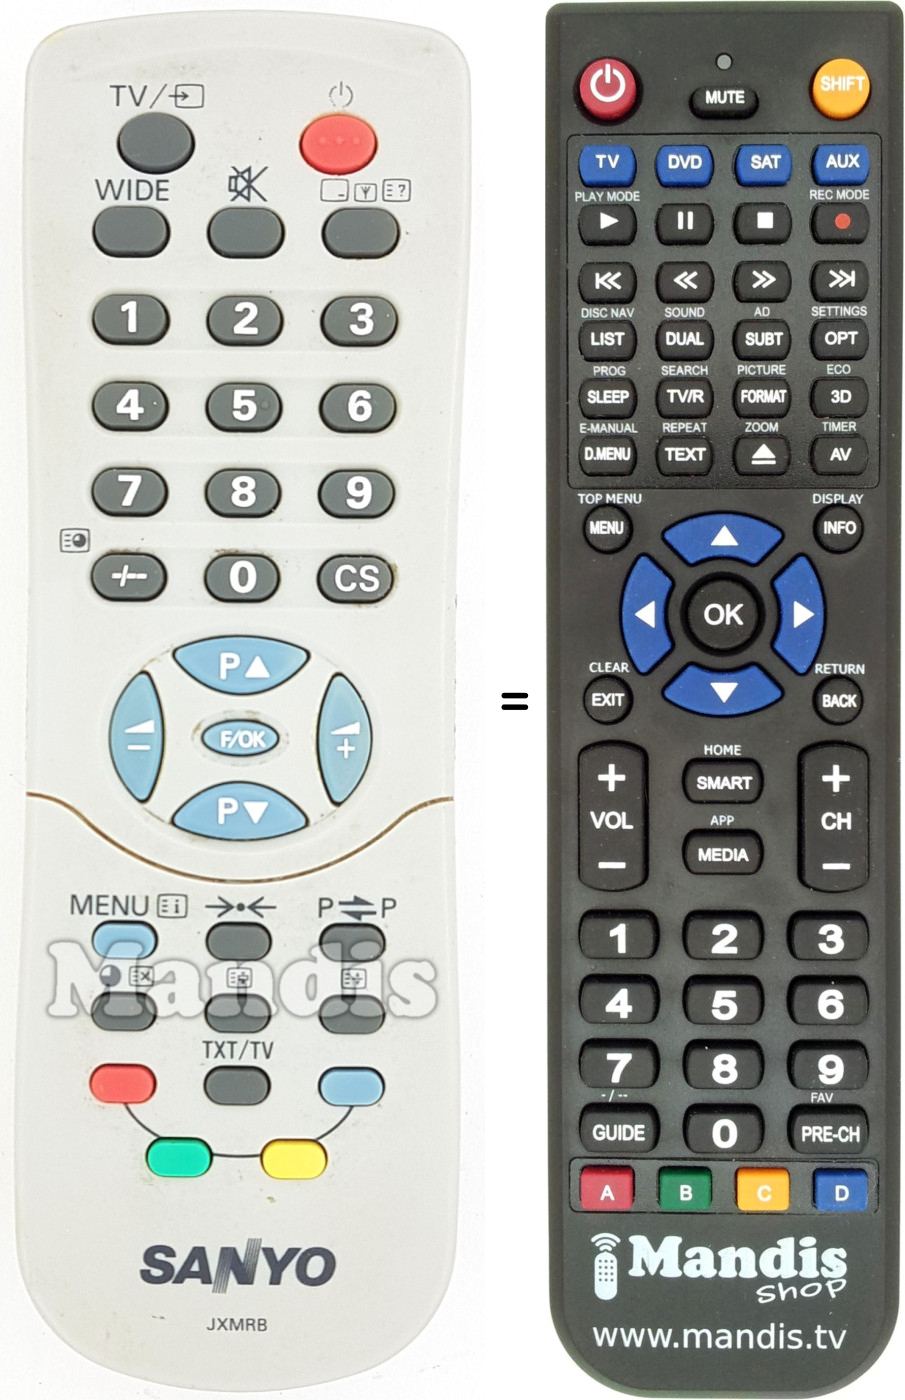 Replacement remote control Sanyo JXMRB